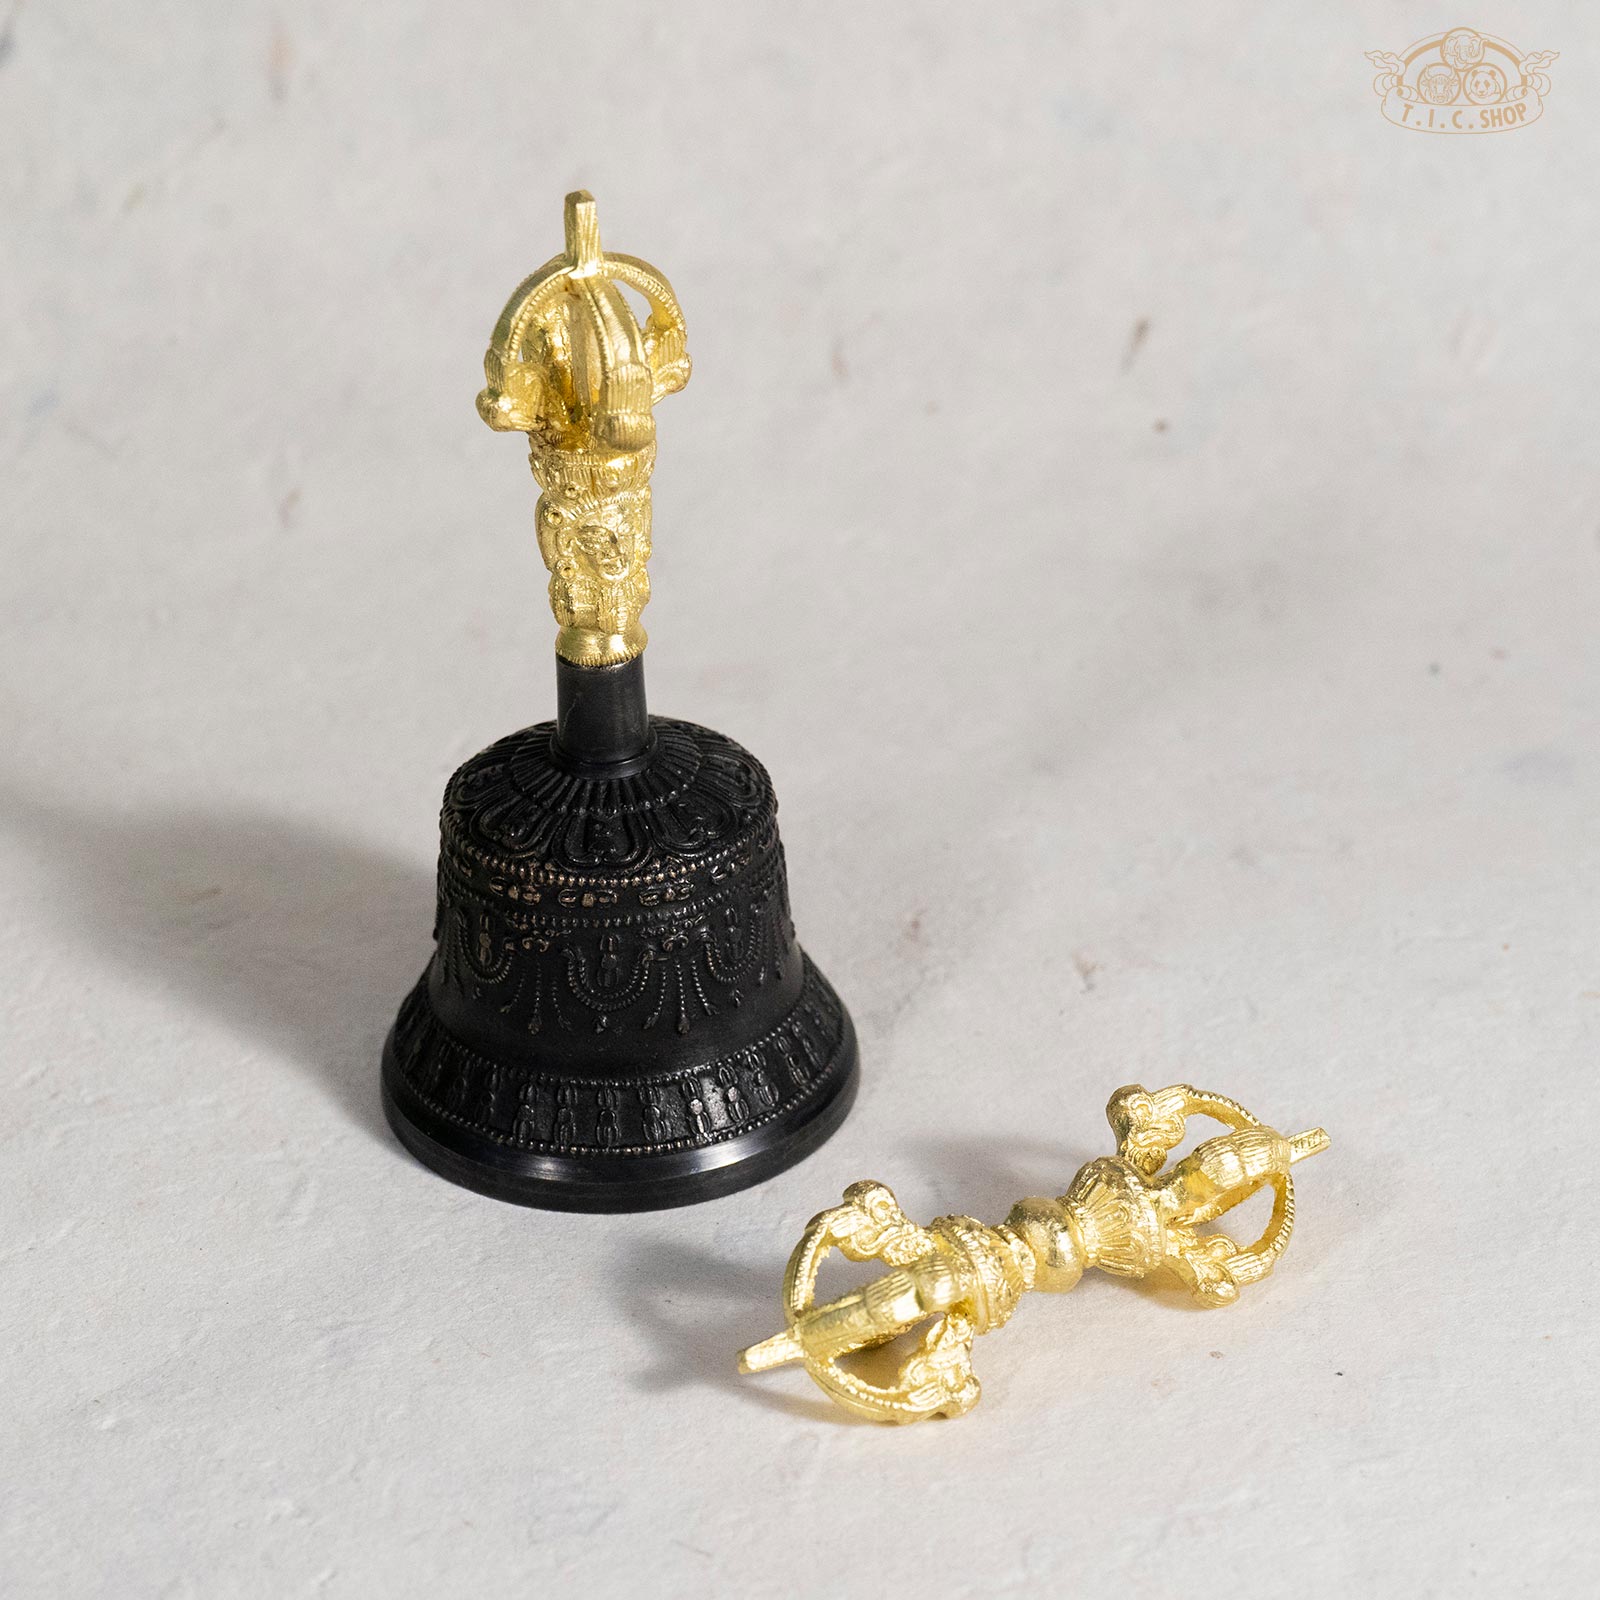 Tibetan Hand Bell / Meditation & Prayer Bells / Dorje / Vajra - Small